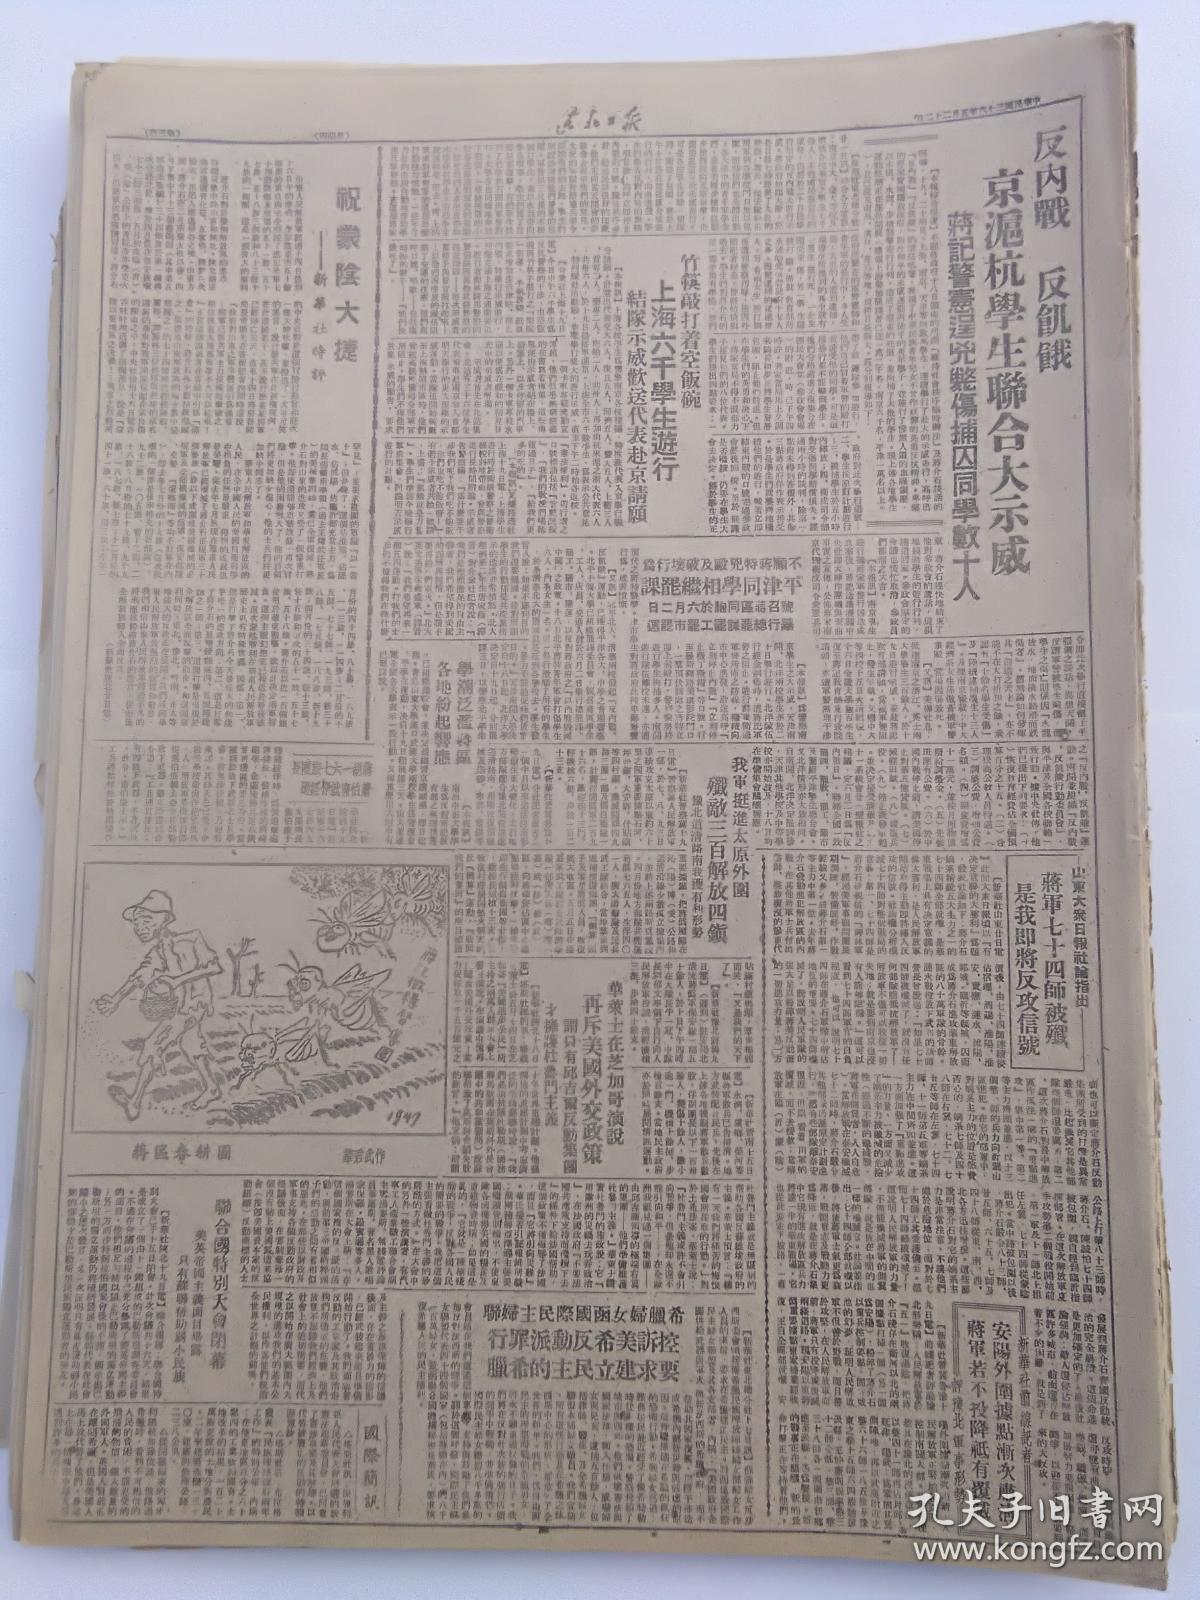 1947年5月22日《东北日报》我军收复康平县城，反内战、反饥饿京沪杭学生联合大示威，华君武漫画等等